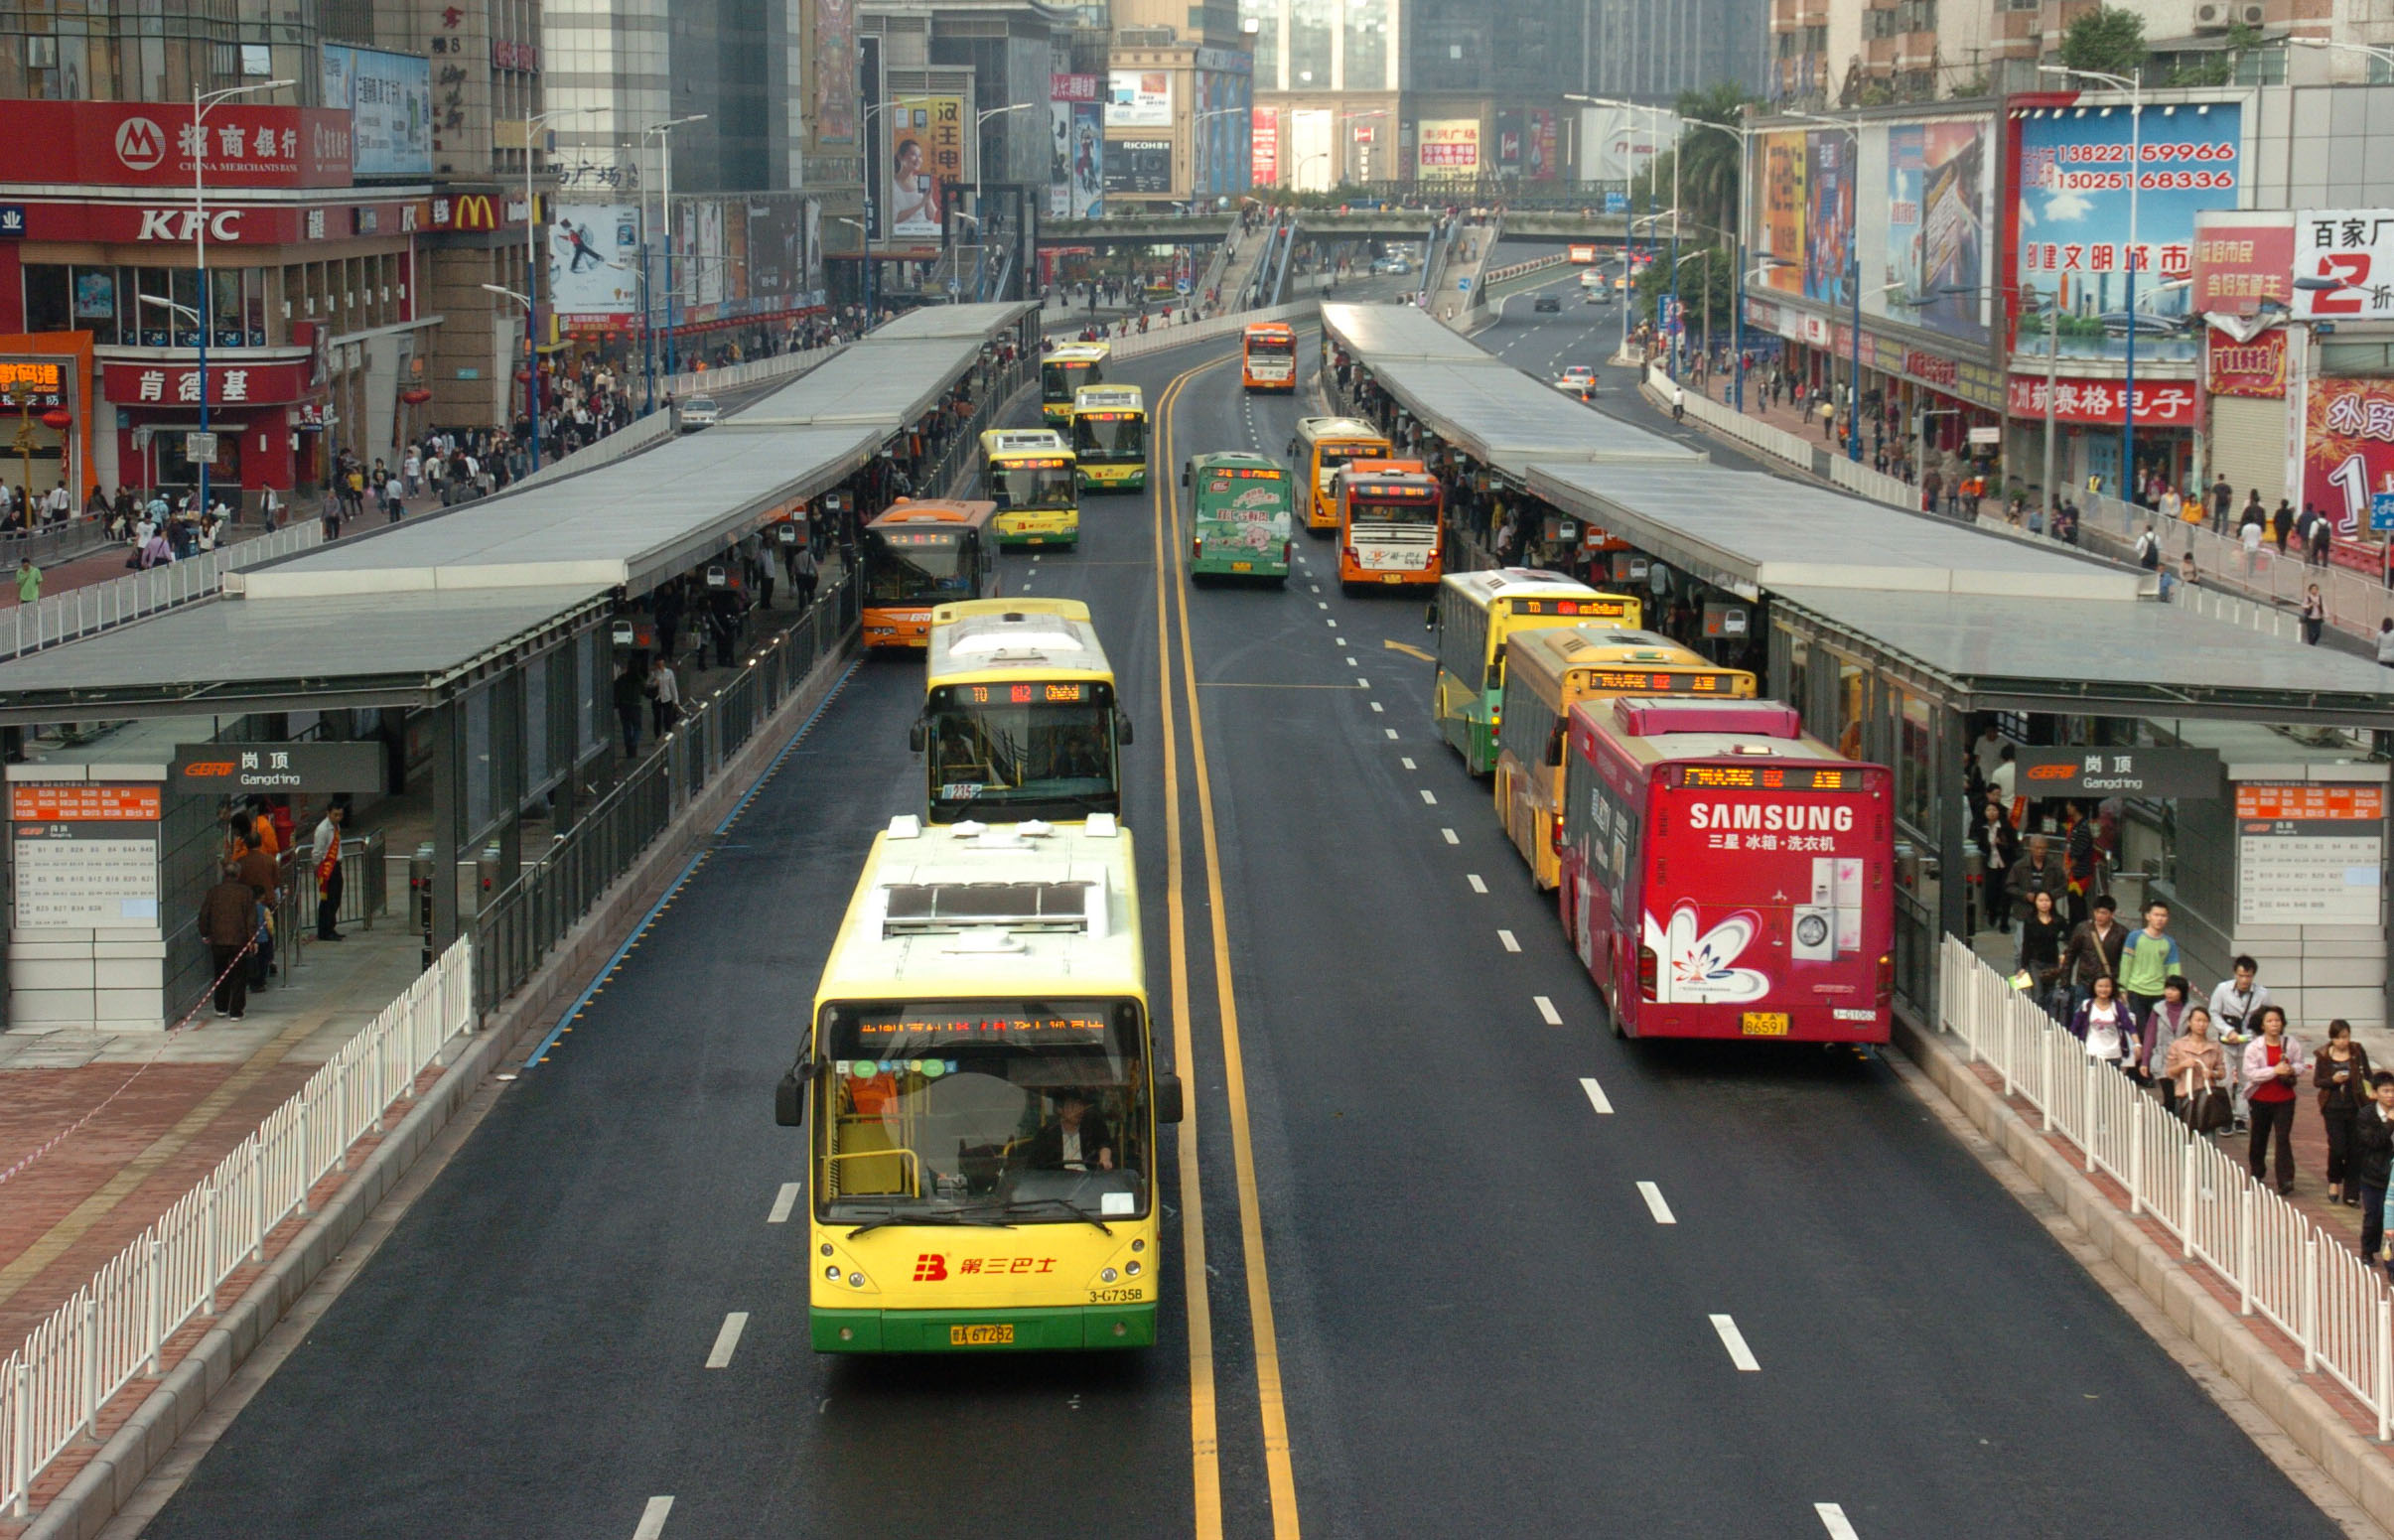 廣州中山大道快速公交（BRT）試驗線，2010年2月10日開通試運營，該BRT試驗線，西起廣州天河區廣州大道，沿天河路-中山大道-黃埔東路，東至蘿崗區開發大道，設計全長22.9公里。